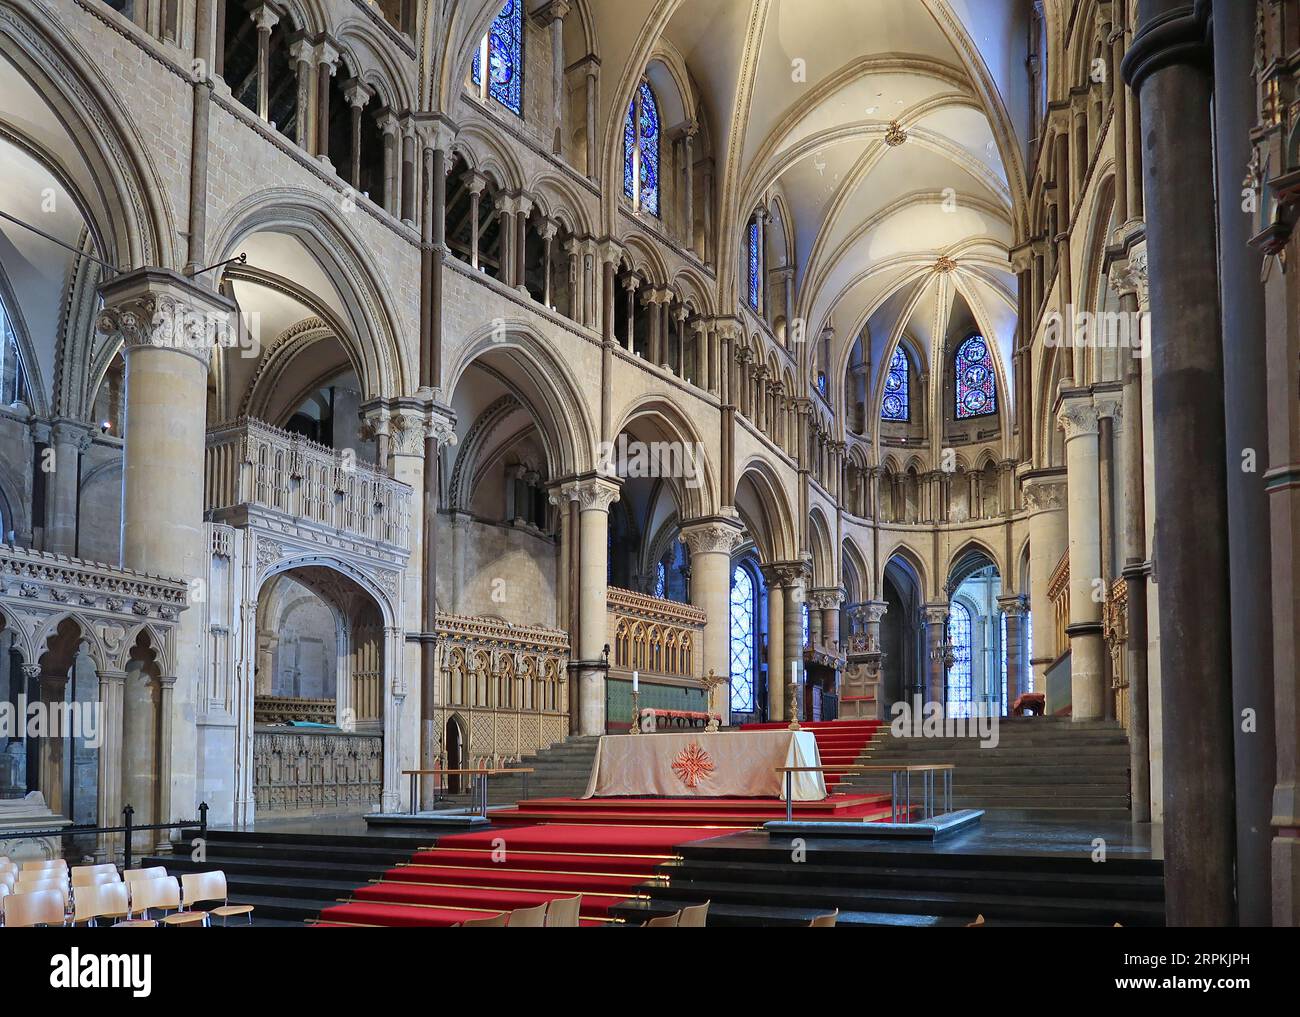 Cathédrale de Canterbury, Kent, Royaume-Uni. Vue sur le Quire en regardant vers l'autel et la chapelle de la Trinité. Montre la voûte en pierre du 12e siècle. Personne présent. Banque D'Images